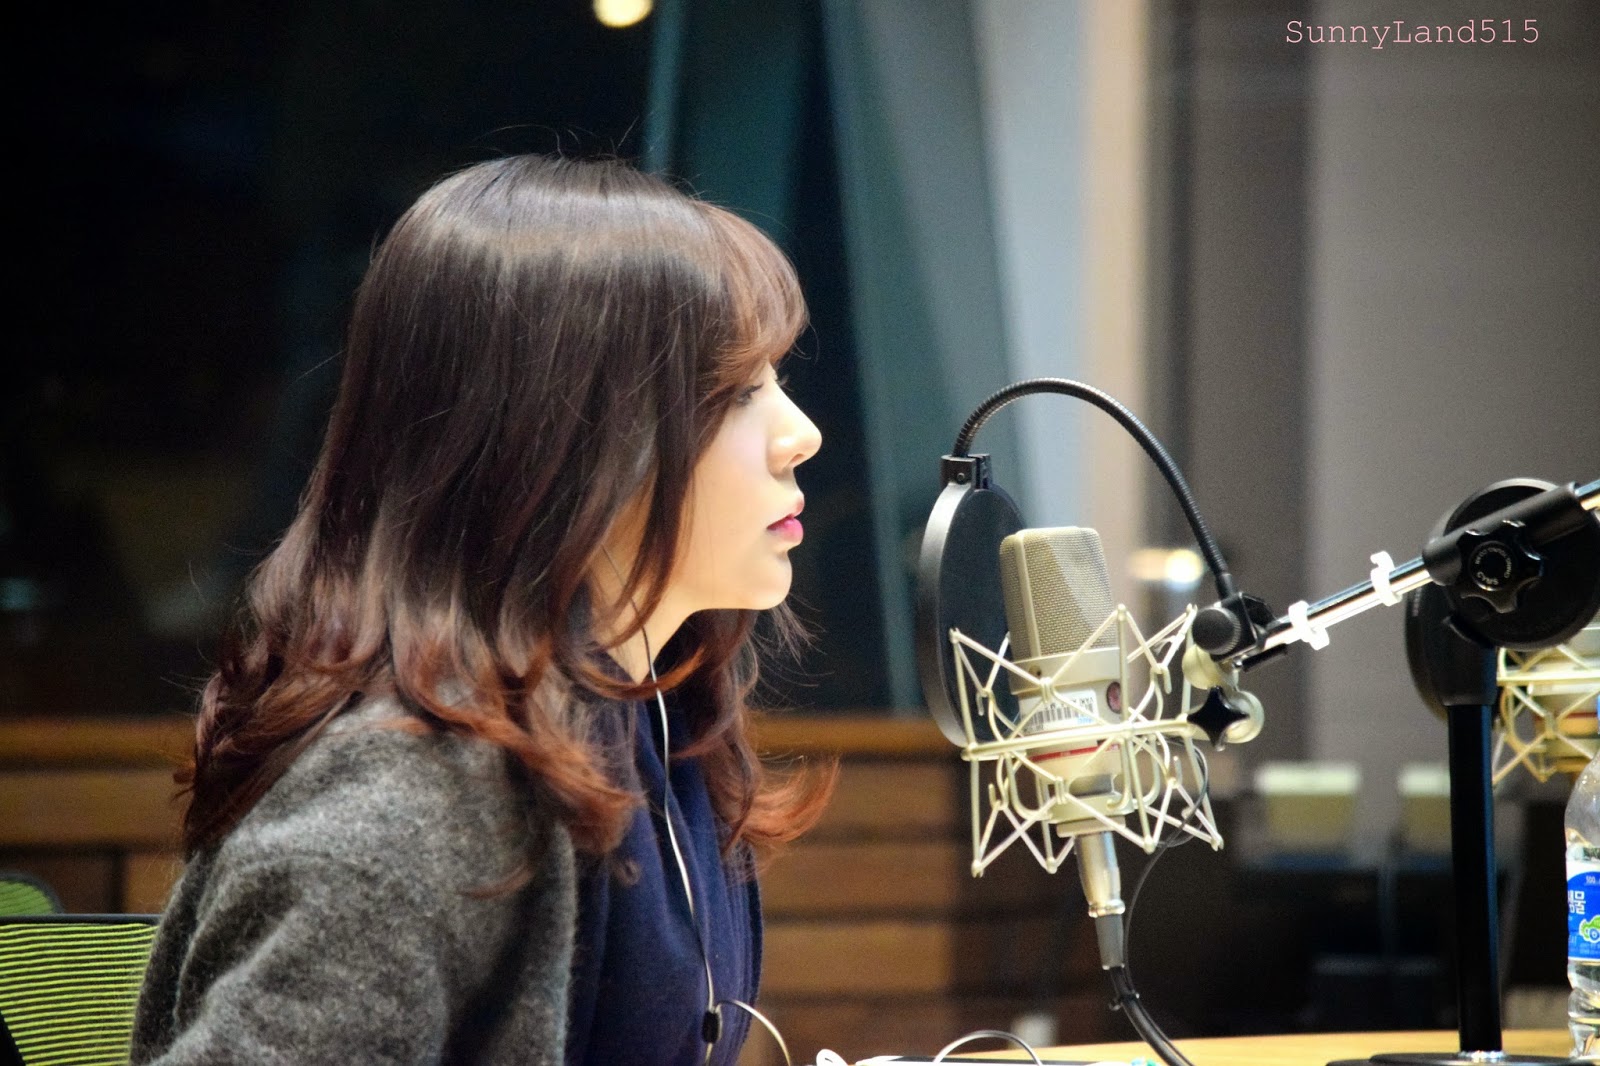 [OTHER][06-02-2015]Hình ảnh mới nhất từ DJ Sunny tại Radio MBC FM4U - "FM Date" - Page 10 DSC_0302_Fotor